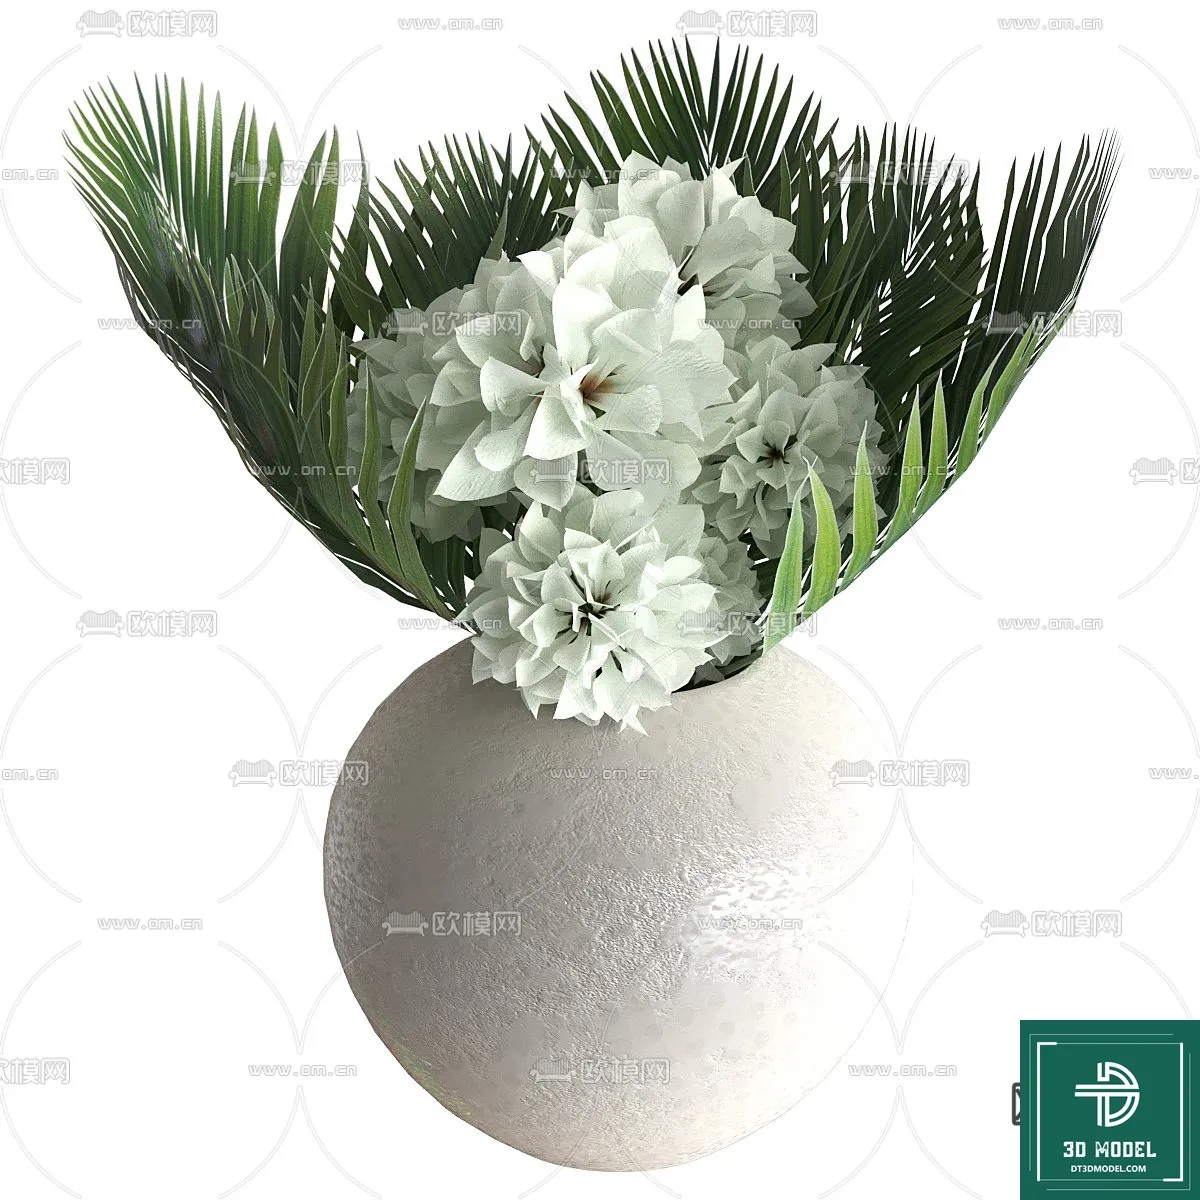 FLOWER VASE 3D MODEL – 076